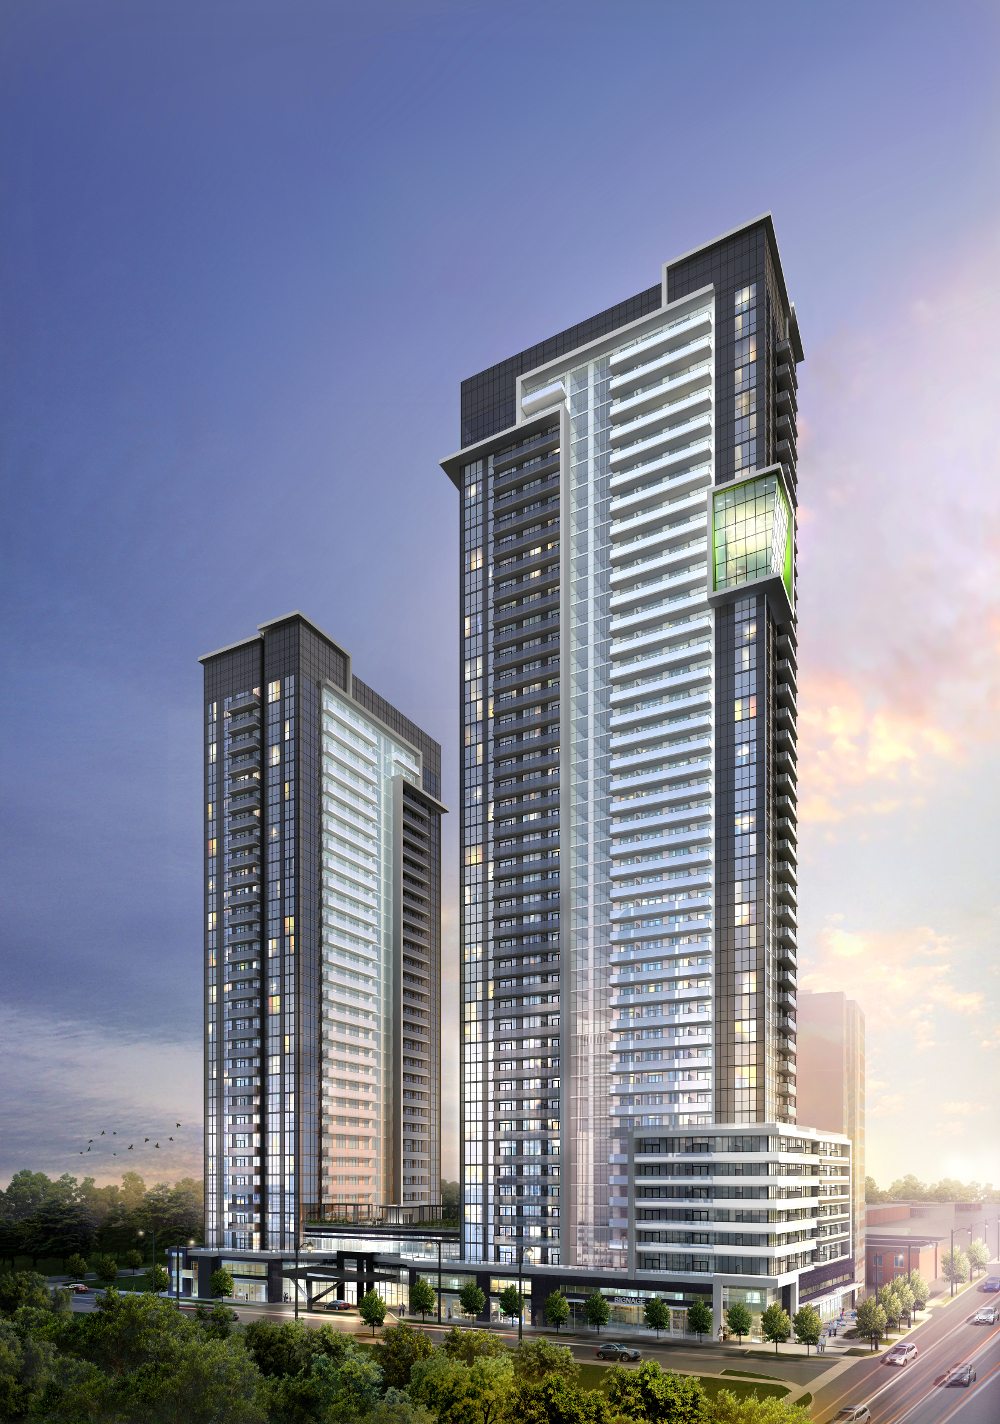 5959 Yonge Condos Building View Toronto, Canada